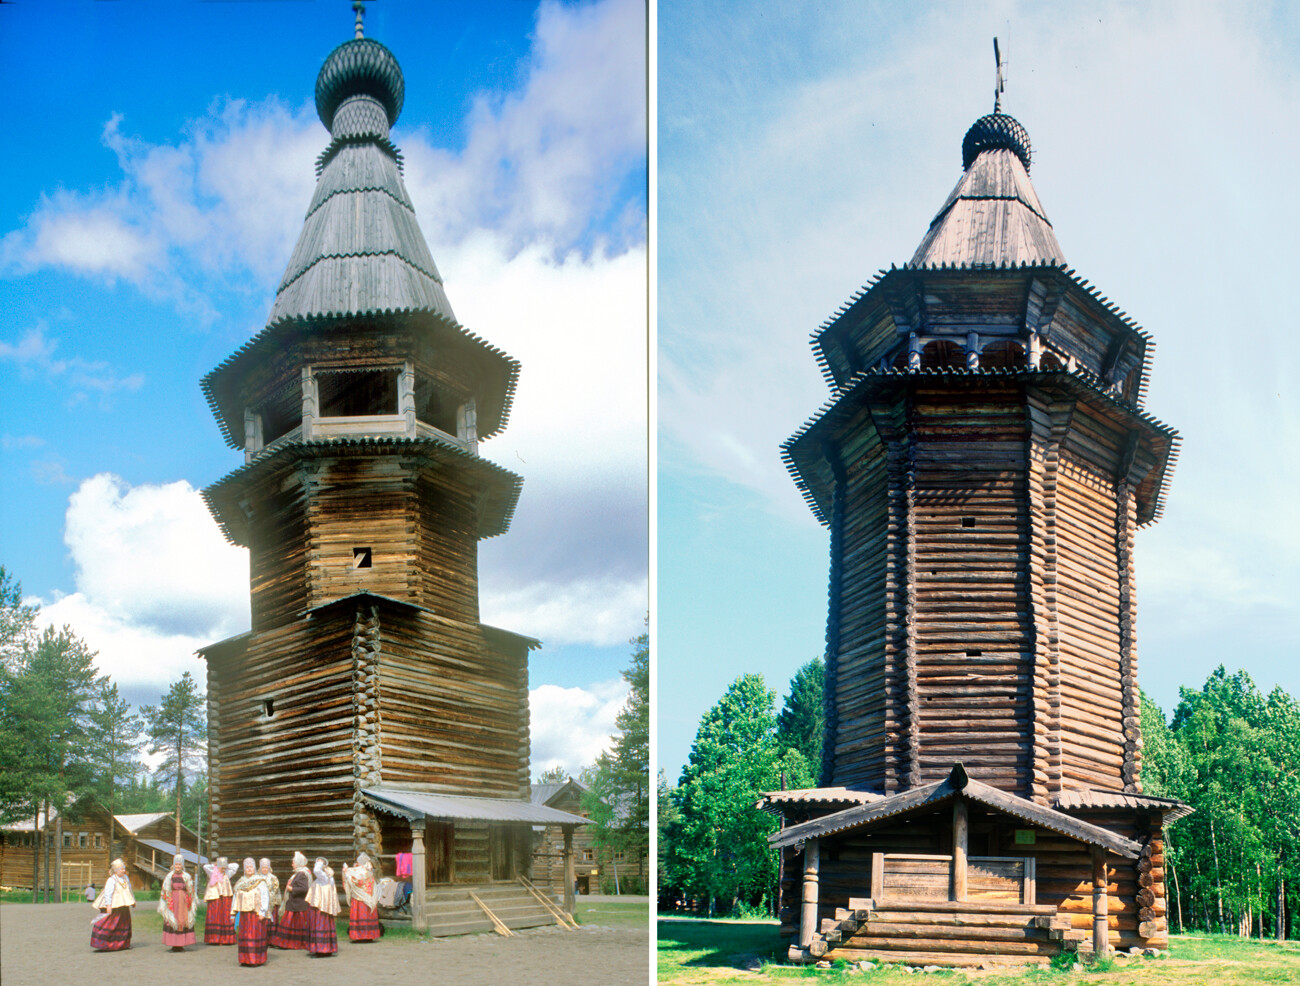 A sinistra: il campanile di tronchi della chiesa dell'Ascensione, nel villaggio di Kushereka, 21 giugno 2003. A destra: il campanile di tronchi del villaggio di Kuliga-Drakovanovo, nel distretto di Krasnoborsk, 22 giugno 1999